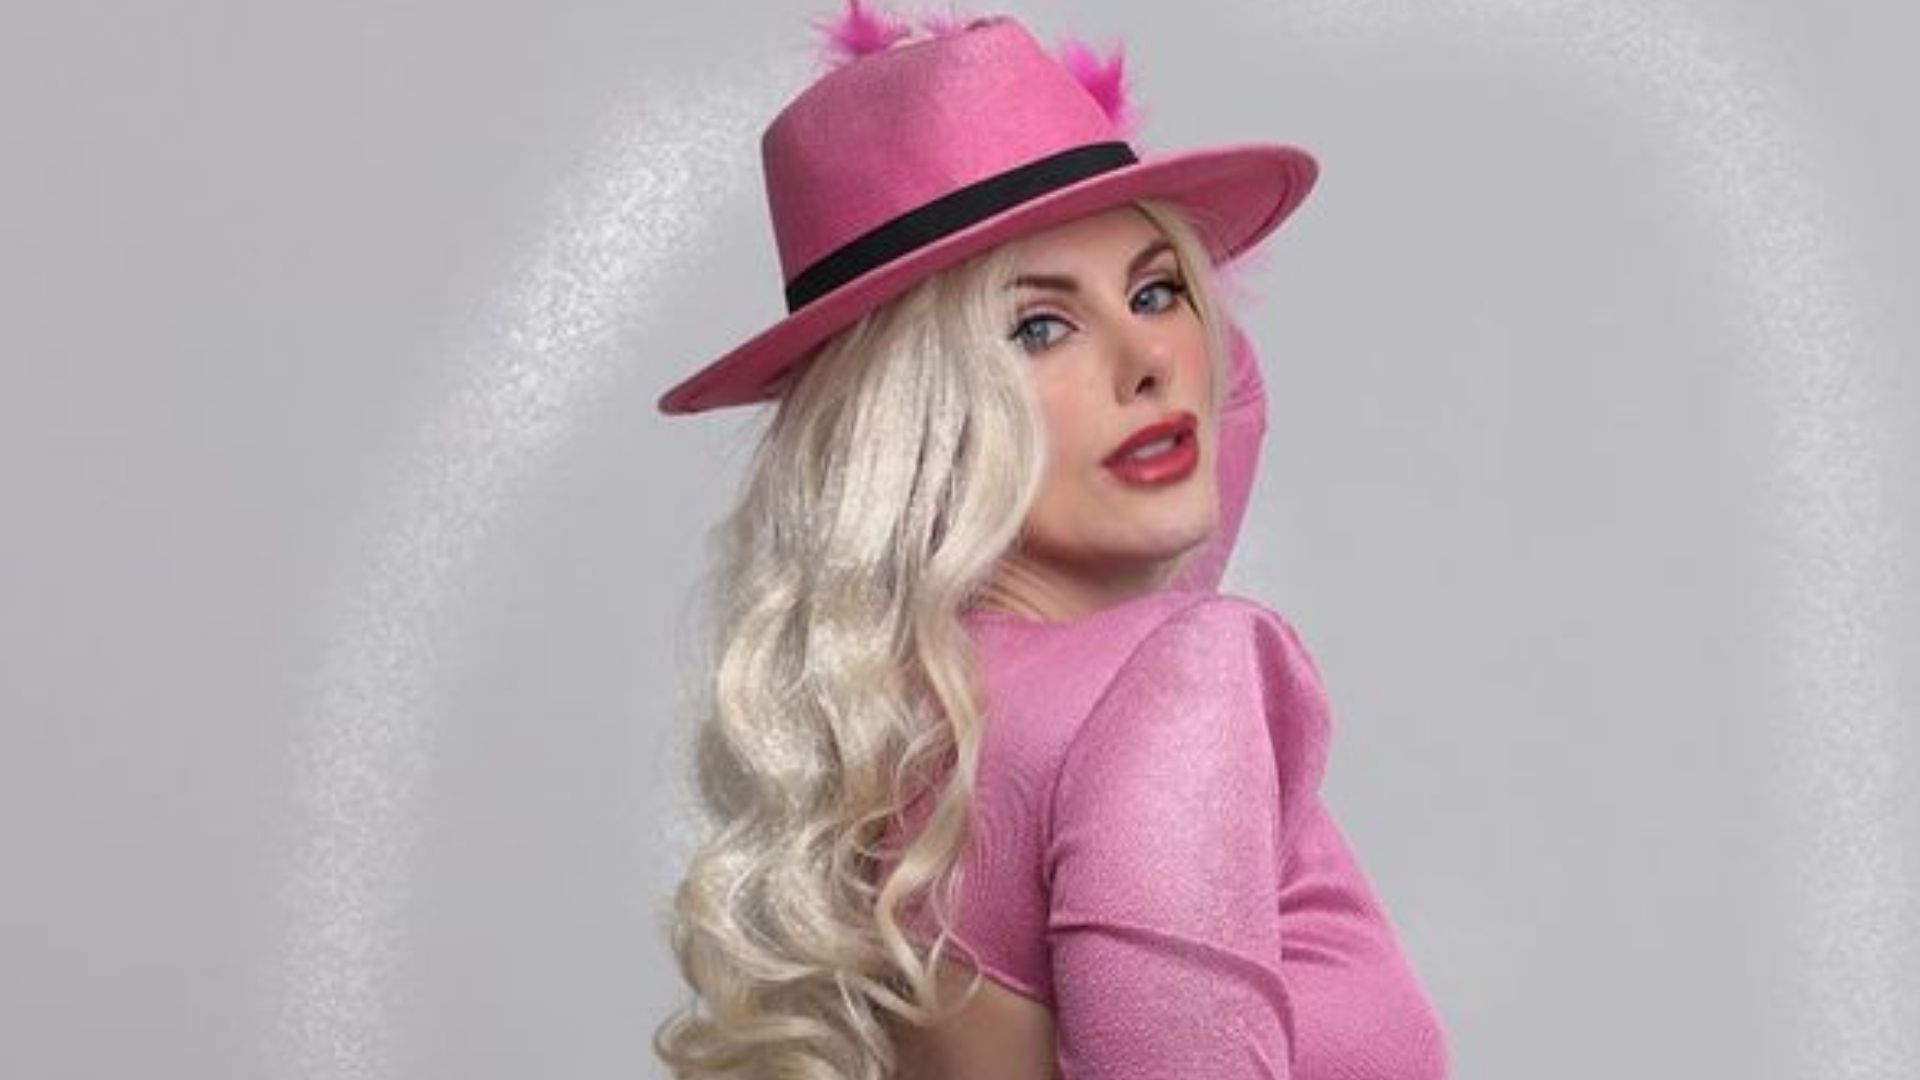 A Barbie do bumbum GG chegou: Deborah Albuquerque faz ensaio de rosa e é comparada com Mulher Melão